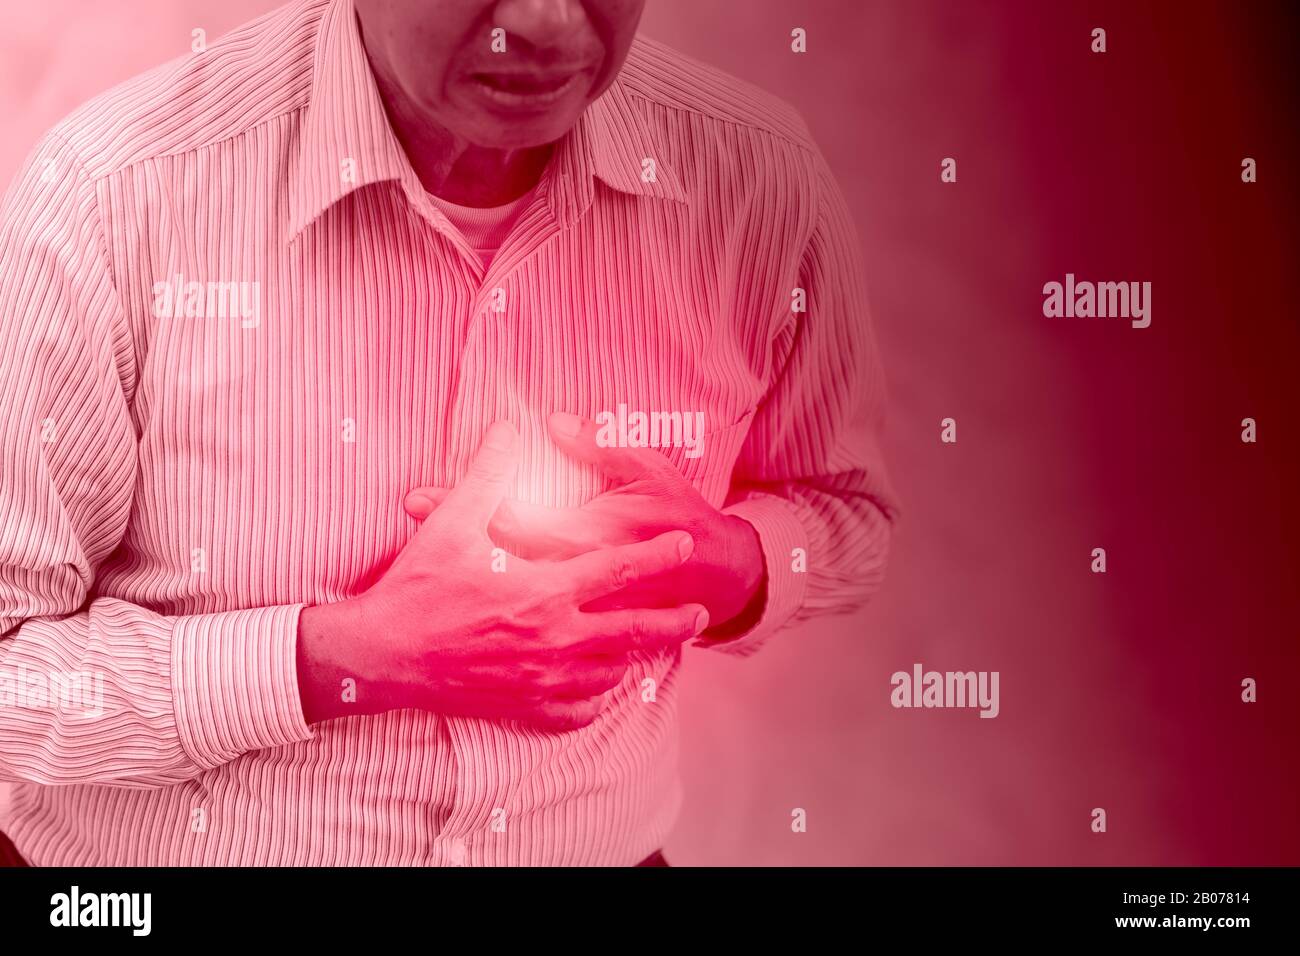 Der chinesische Älteste von Wuhan infiziert Coronavirus Hand an der Brust Gesundheitsproblem durch schwieriges Atmen und Lungenläsionen Konzept Stockfoto